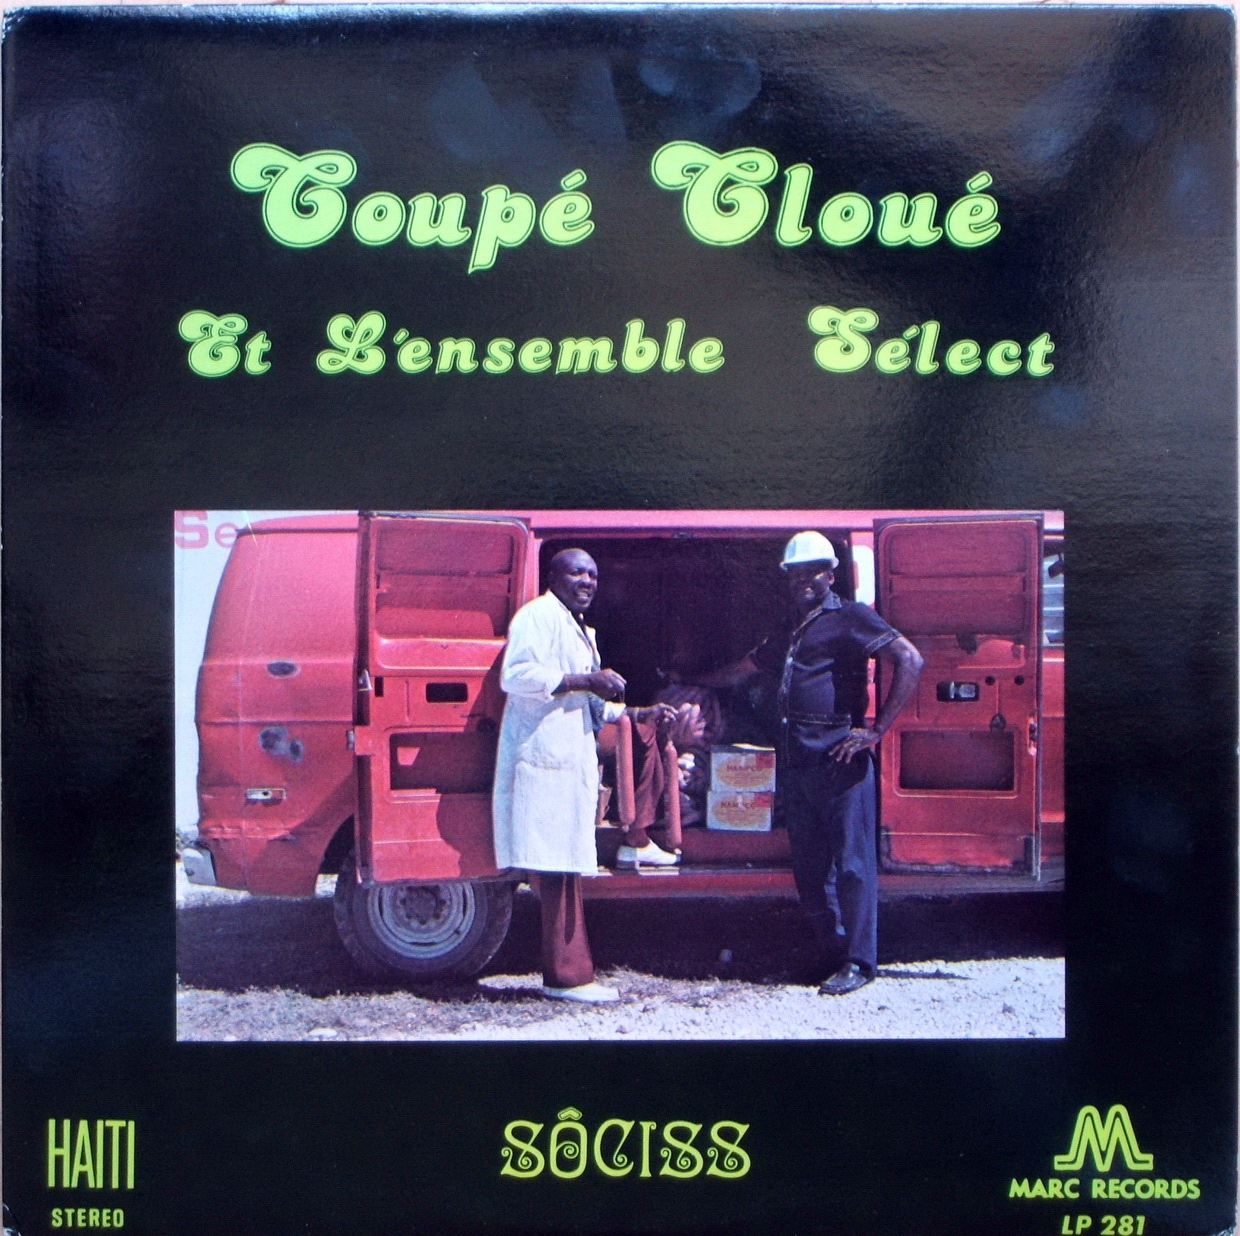   coupé cloué - sociss (1976)  Marc+lp+281